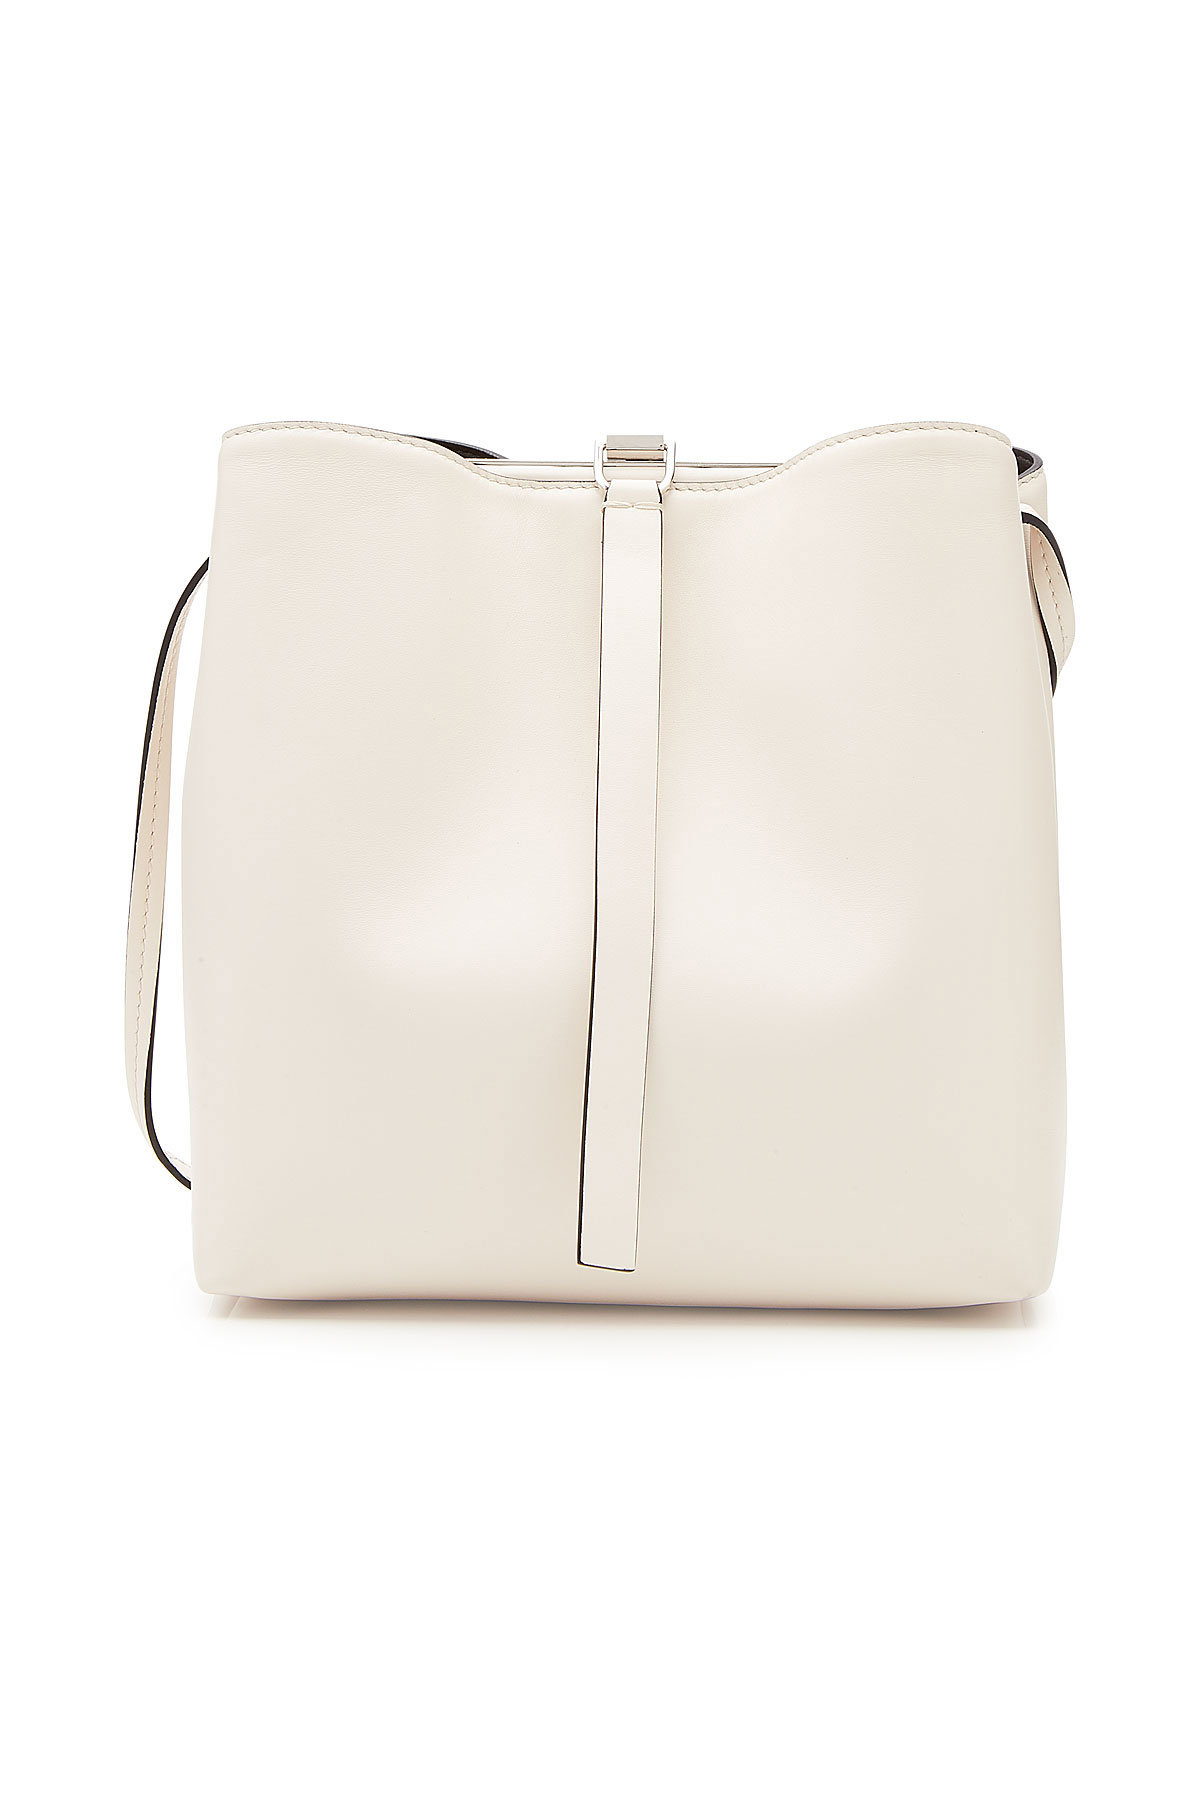 Proenza Schouler - Frame Leather Shoulder Bag